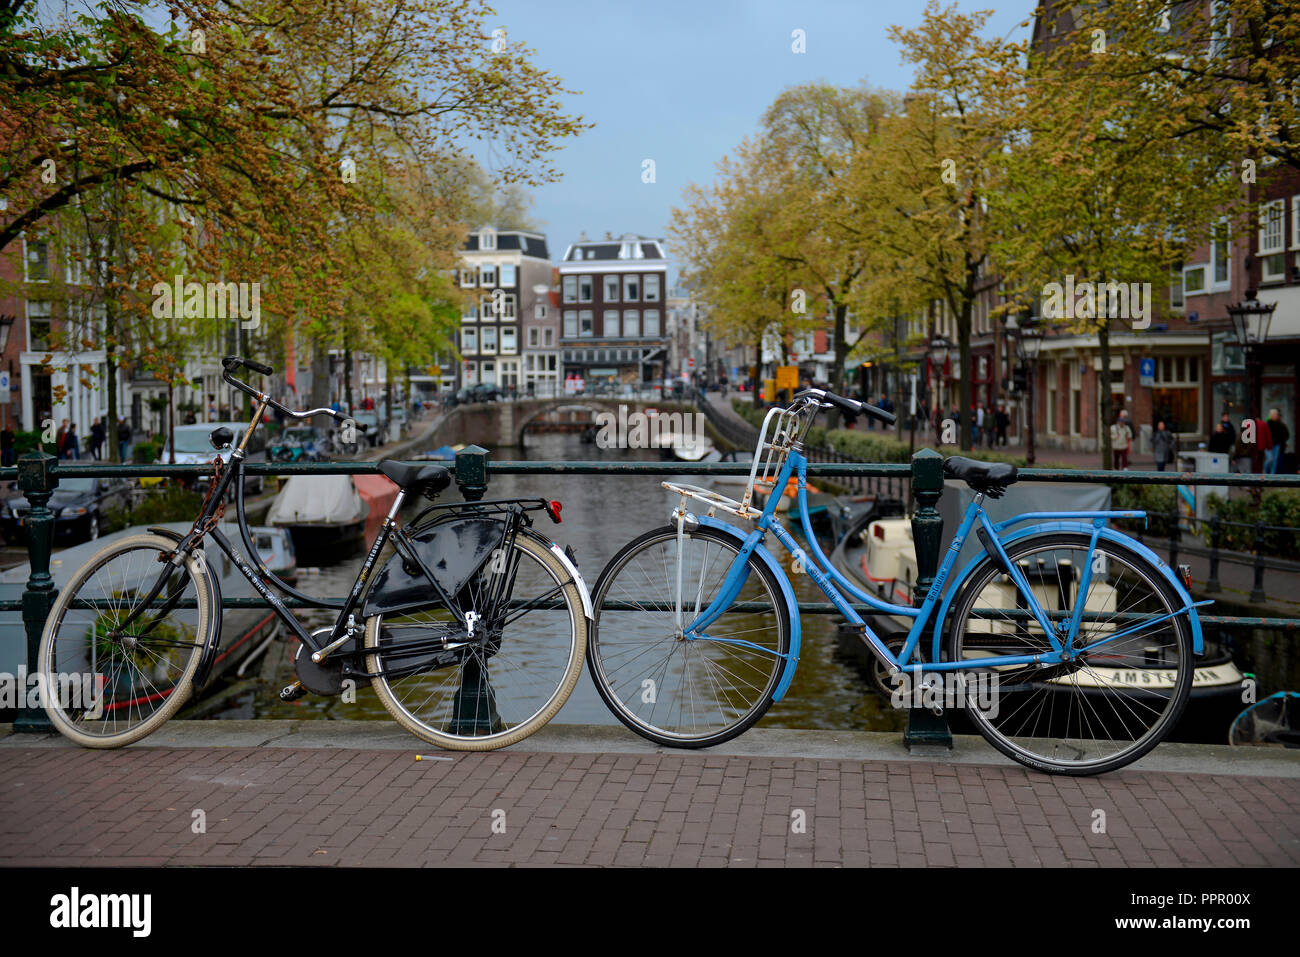 Fahrraeder, Spiegelgracht, Amsterdam, Niederlande Stock Photo